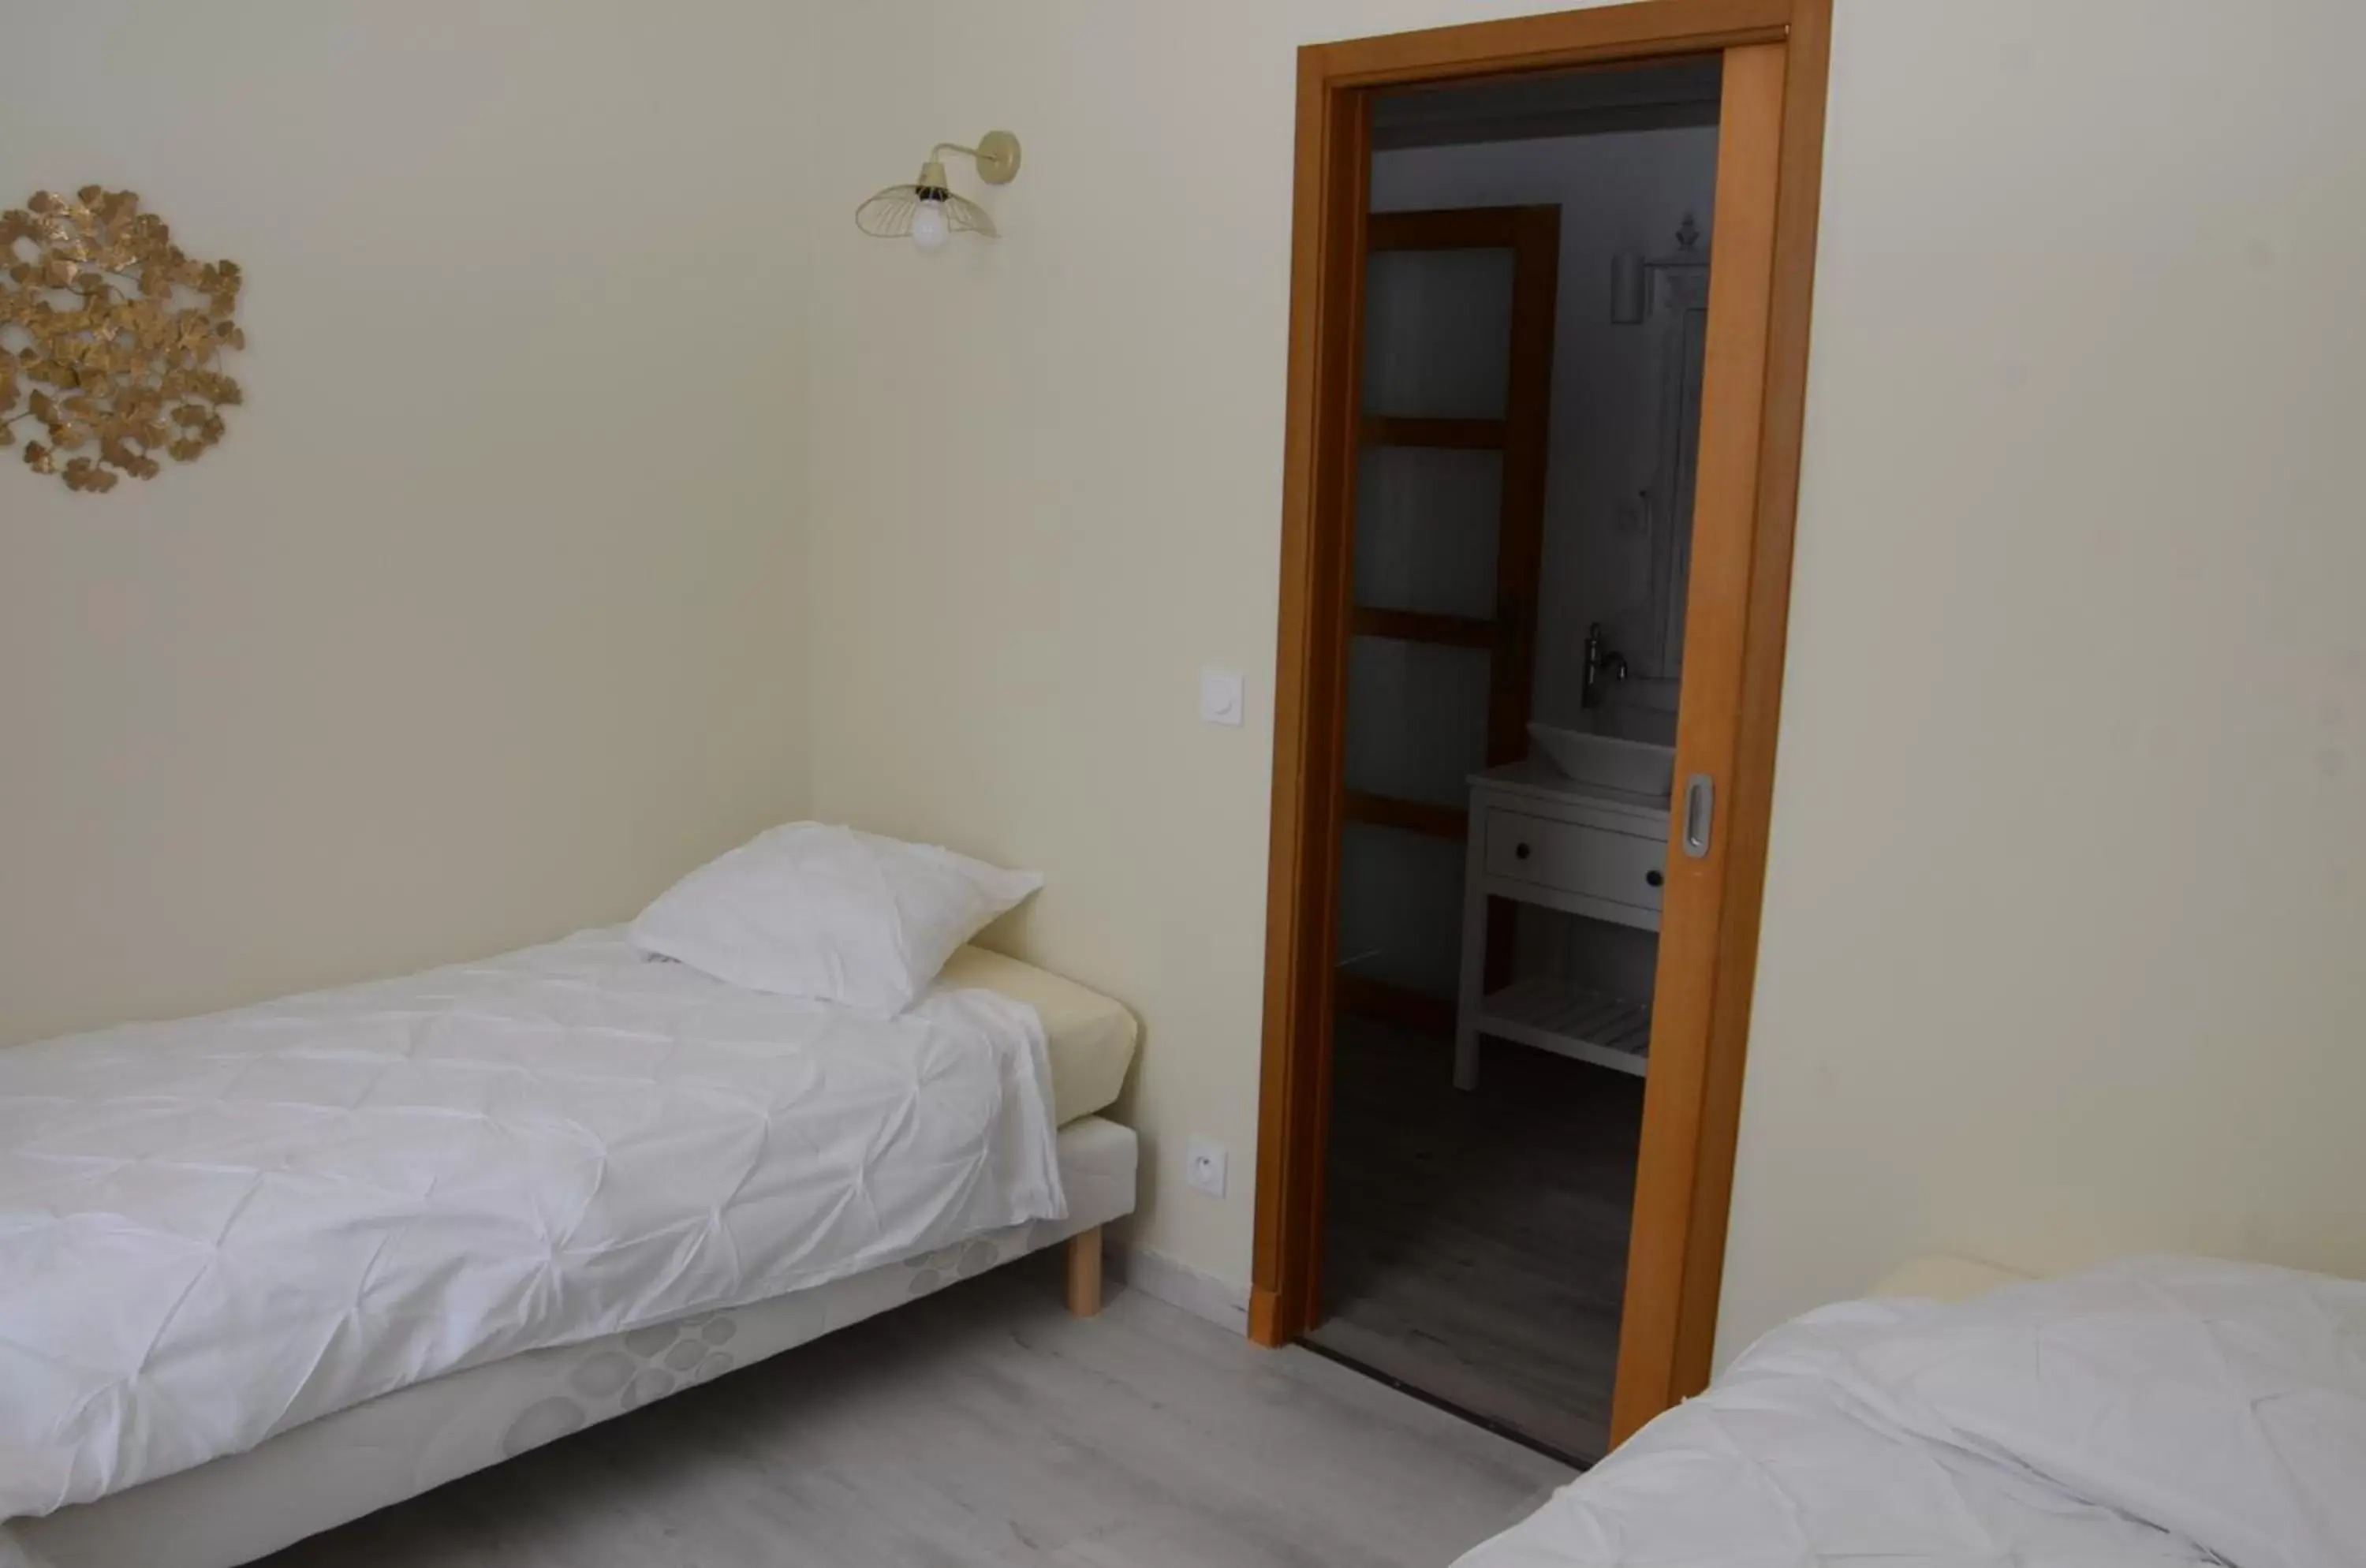 Bedroom, Bed in Nostra Demora